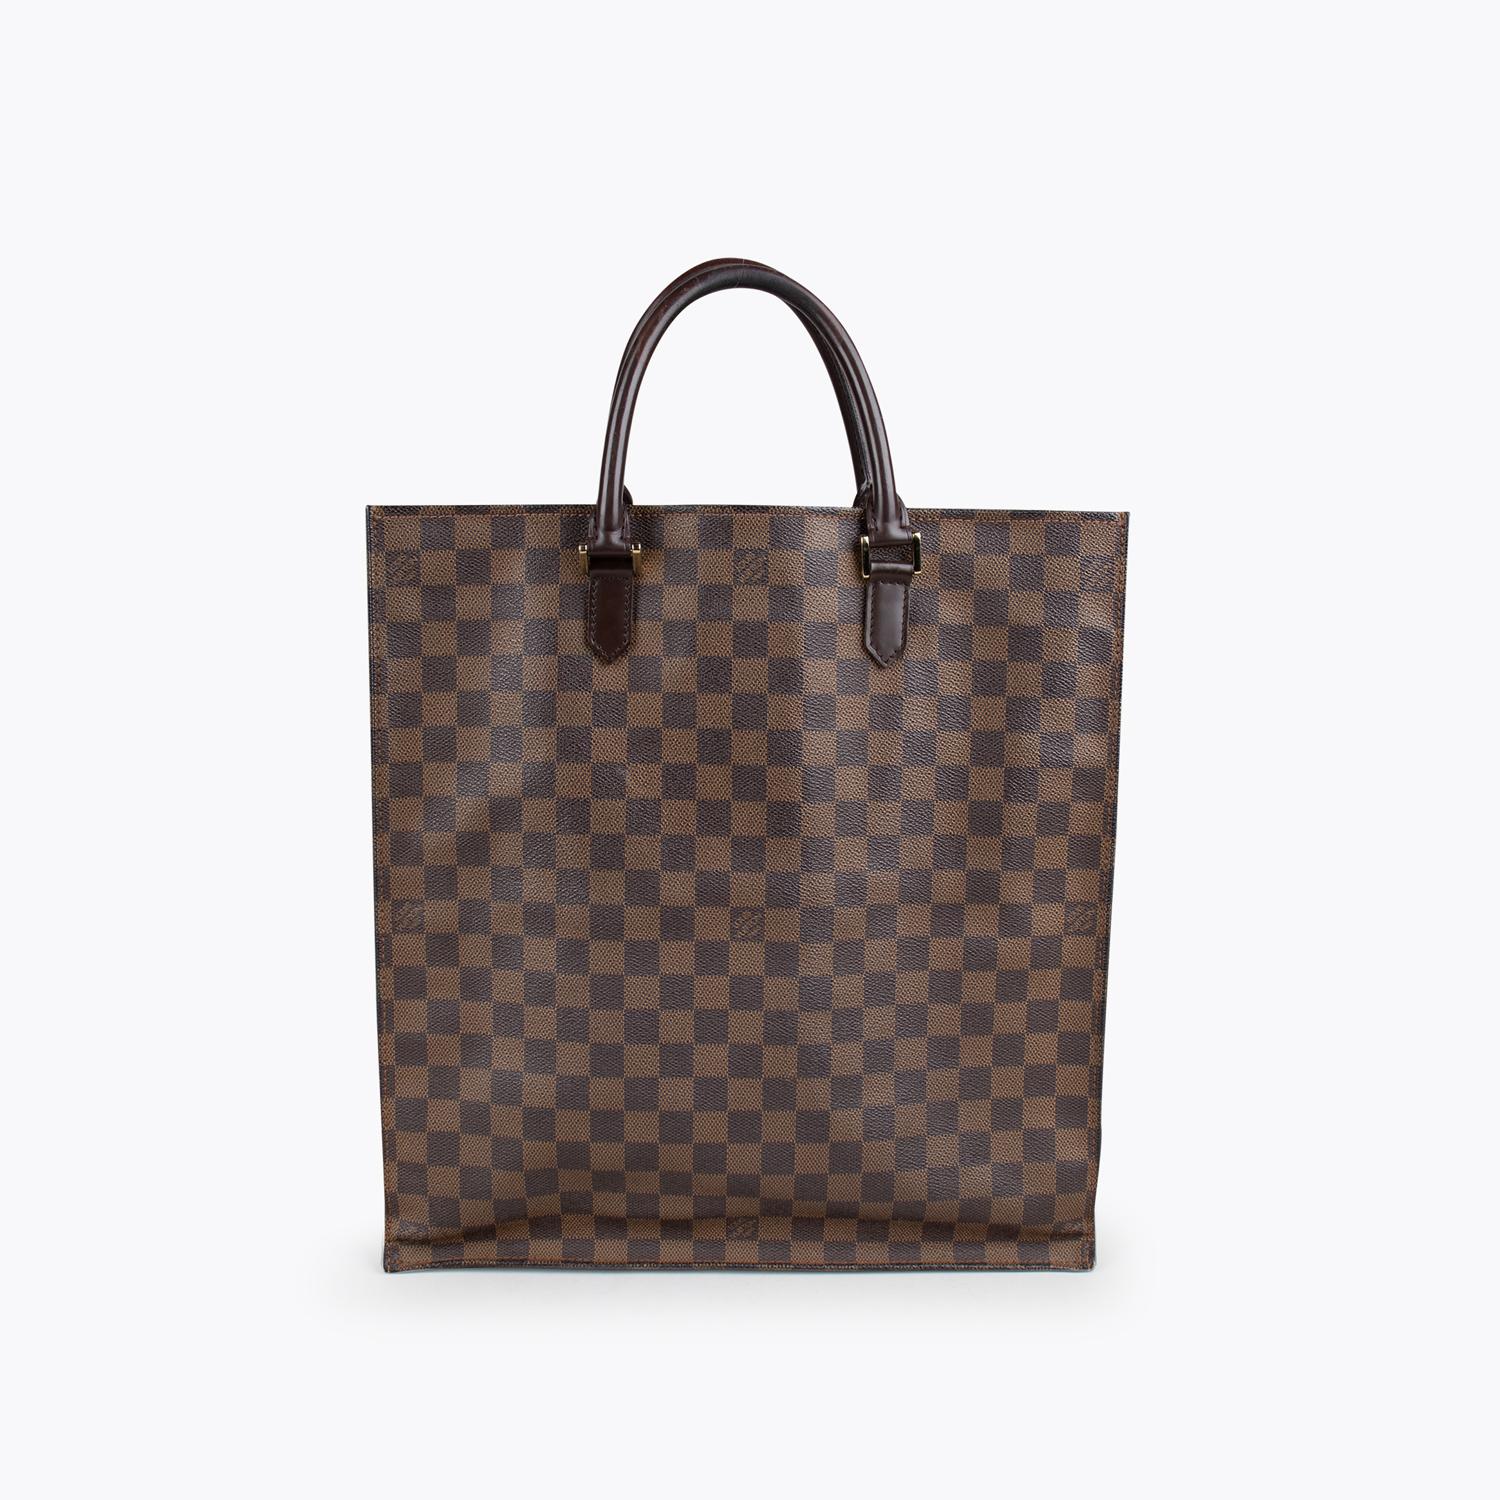 Black Louis Vuitton Damier Sac Plat Bag